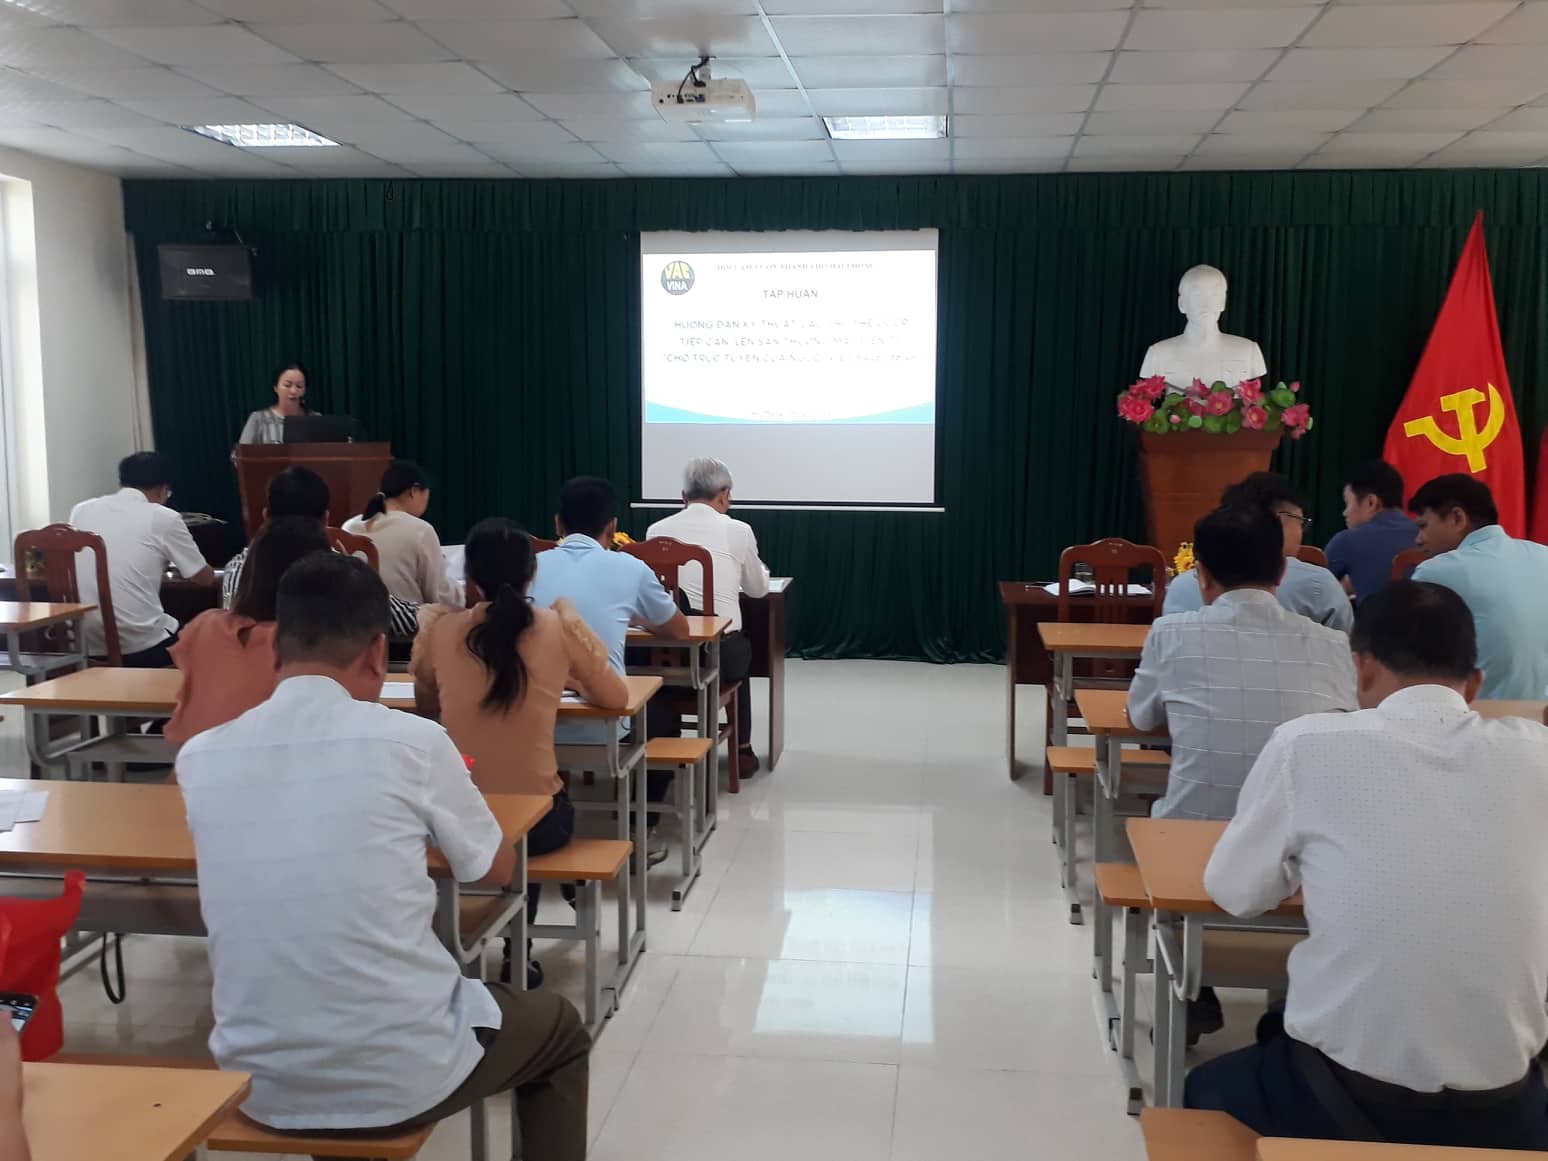 Hội Làm vườn TP. Hải Phòng kết hợp cùng Công ty CP Hoa Sen Đỏ tổ chức tập huấn hướng dẫn kỹ thuật các chủ thể OCOP tiếp cận lên sàn thương mại điện tử “Chợ trực tuyến của người Việt Sale186.vn”.